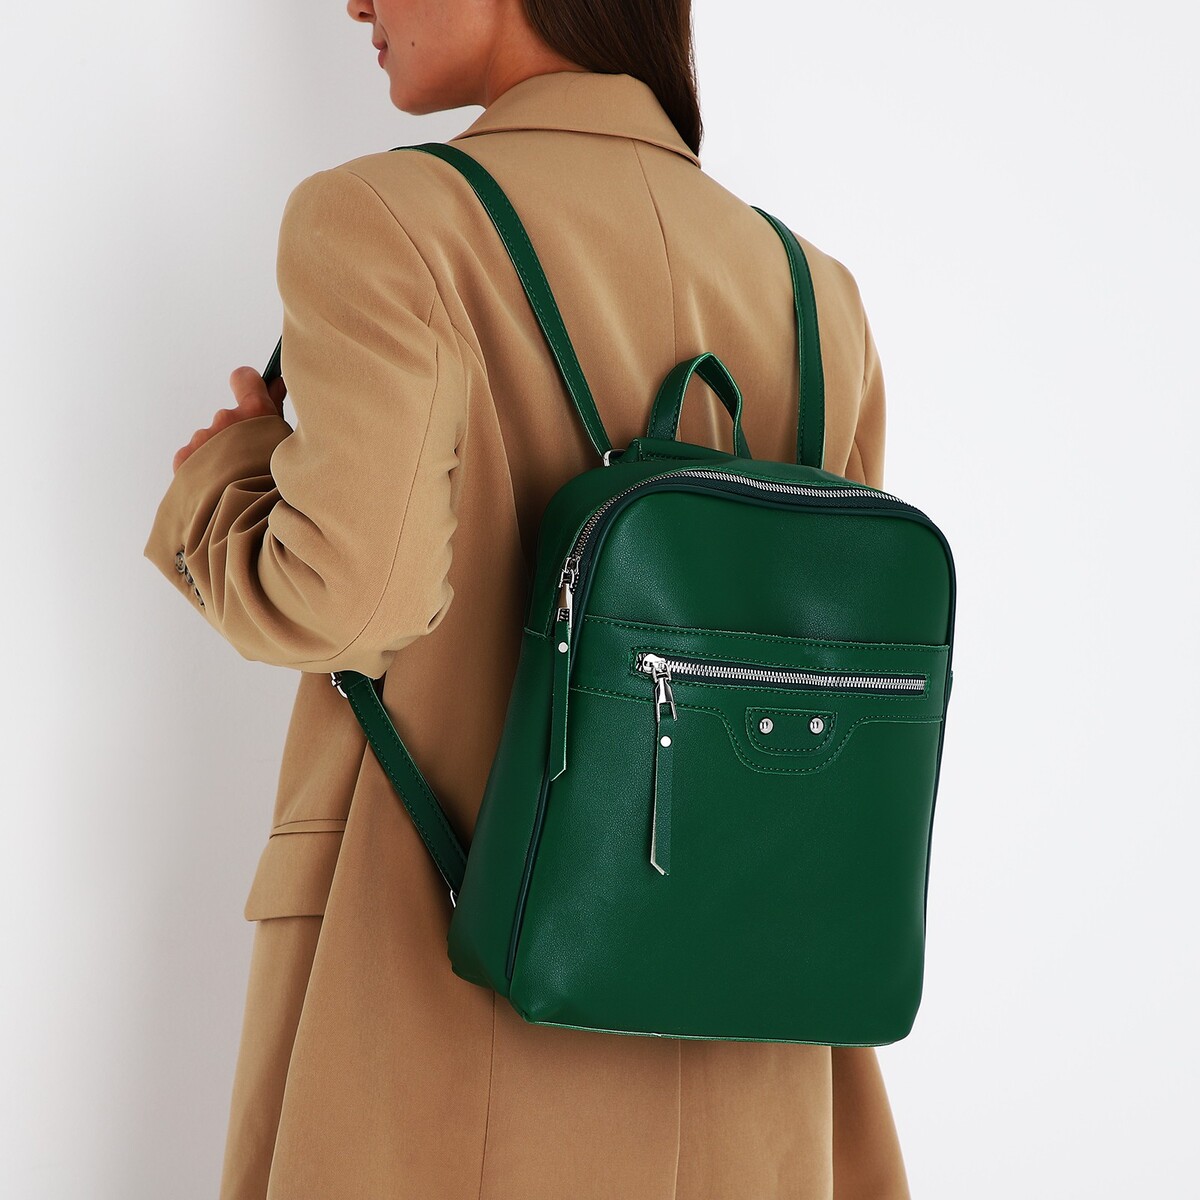 Рюкзак женский из искусственной кожи на молнии, 3 кармана, цвет зеленый